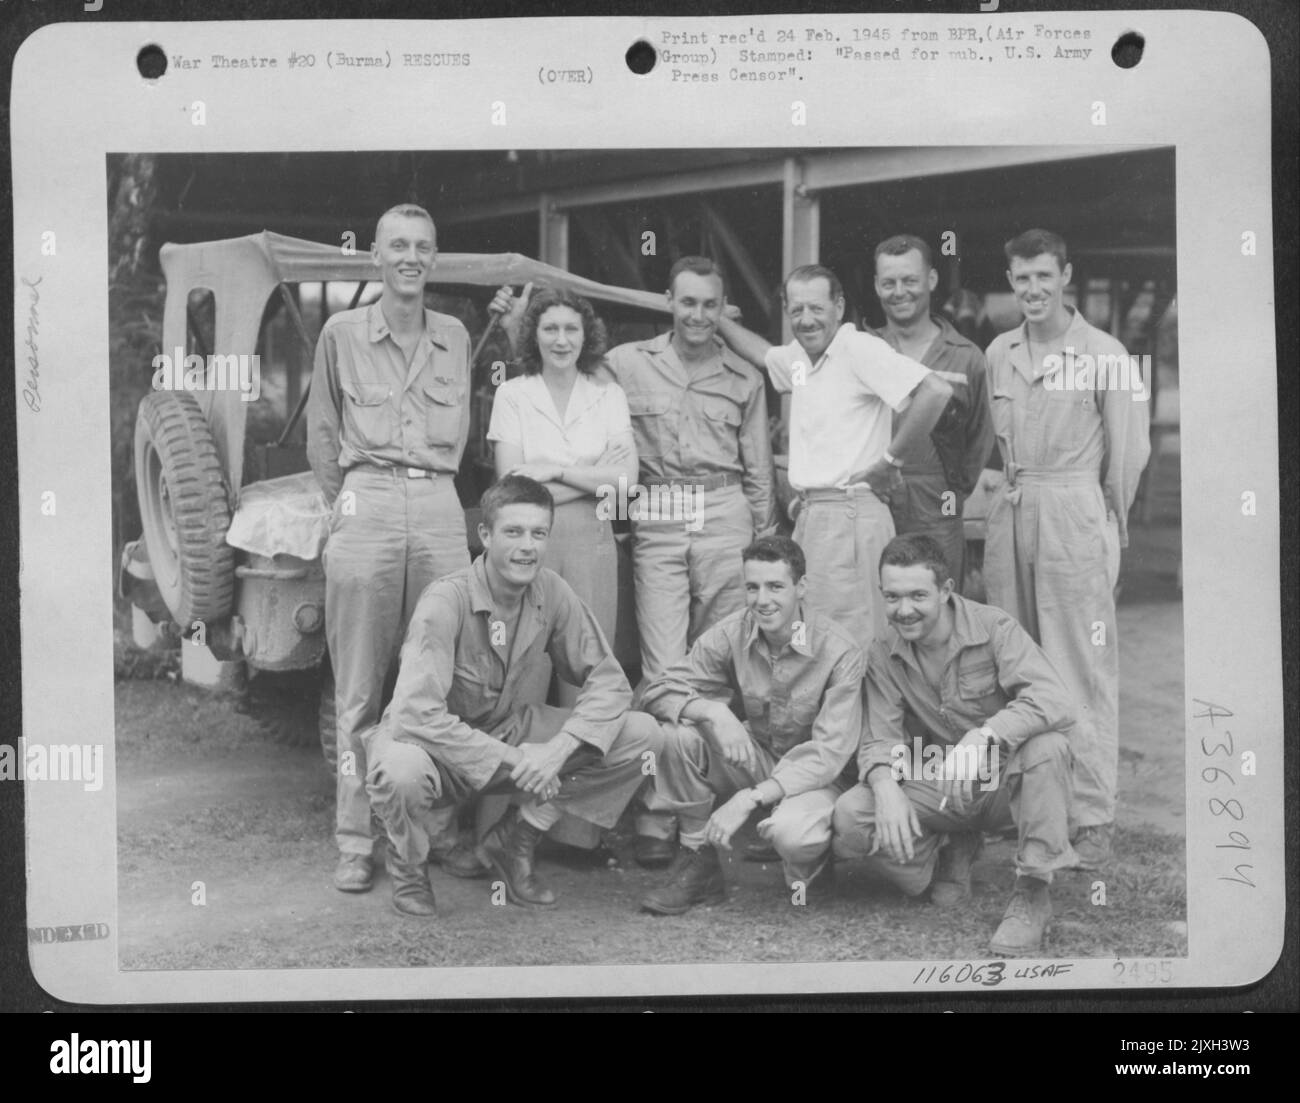 Diese Boeing B-29 Männer fanden eine Oase im Dschungel, als sie von Assam Tea Planters gehostet wurden, nachdem sie im Dschungel verloren gegangen waren. Die Crew Wurde In Monsoon Weather Mit Einem Fallschirm Abgesetzt Und Landete Im Spurlosen Land, Aus Dem Sie Von Einem Air Service Command Gerettet Wurden Stockfoto